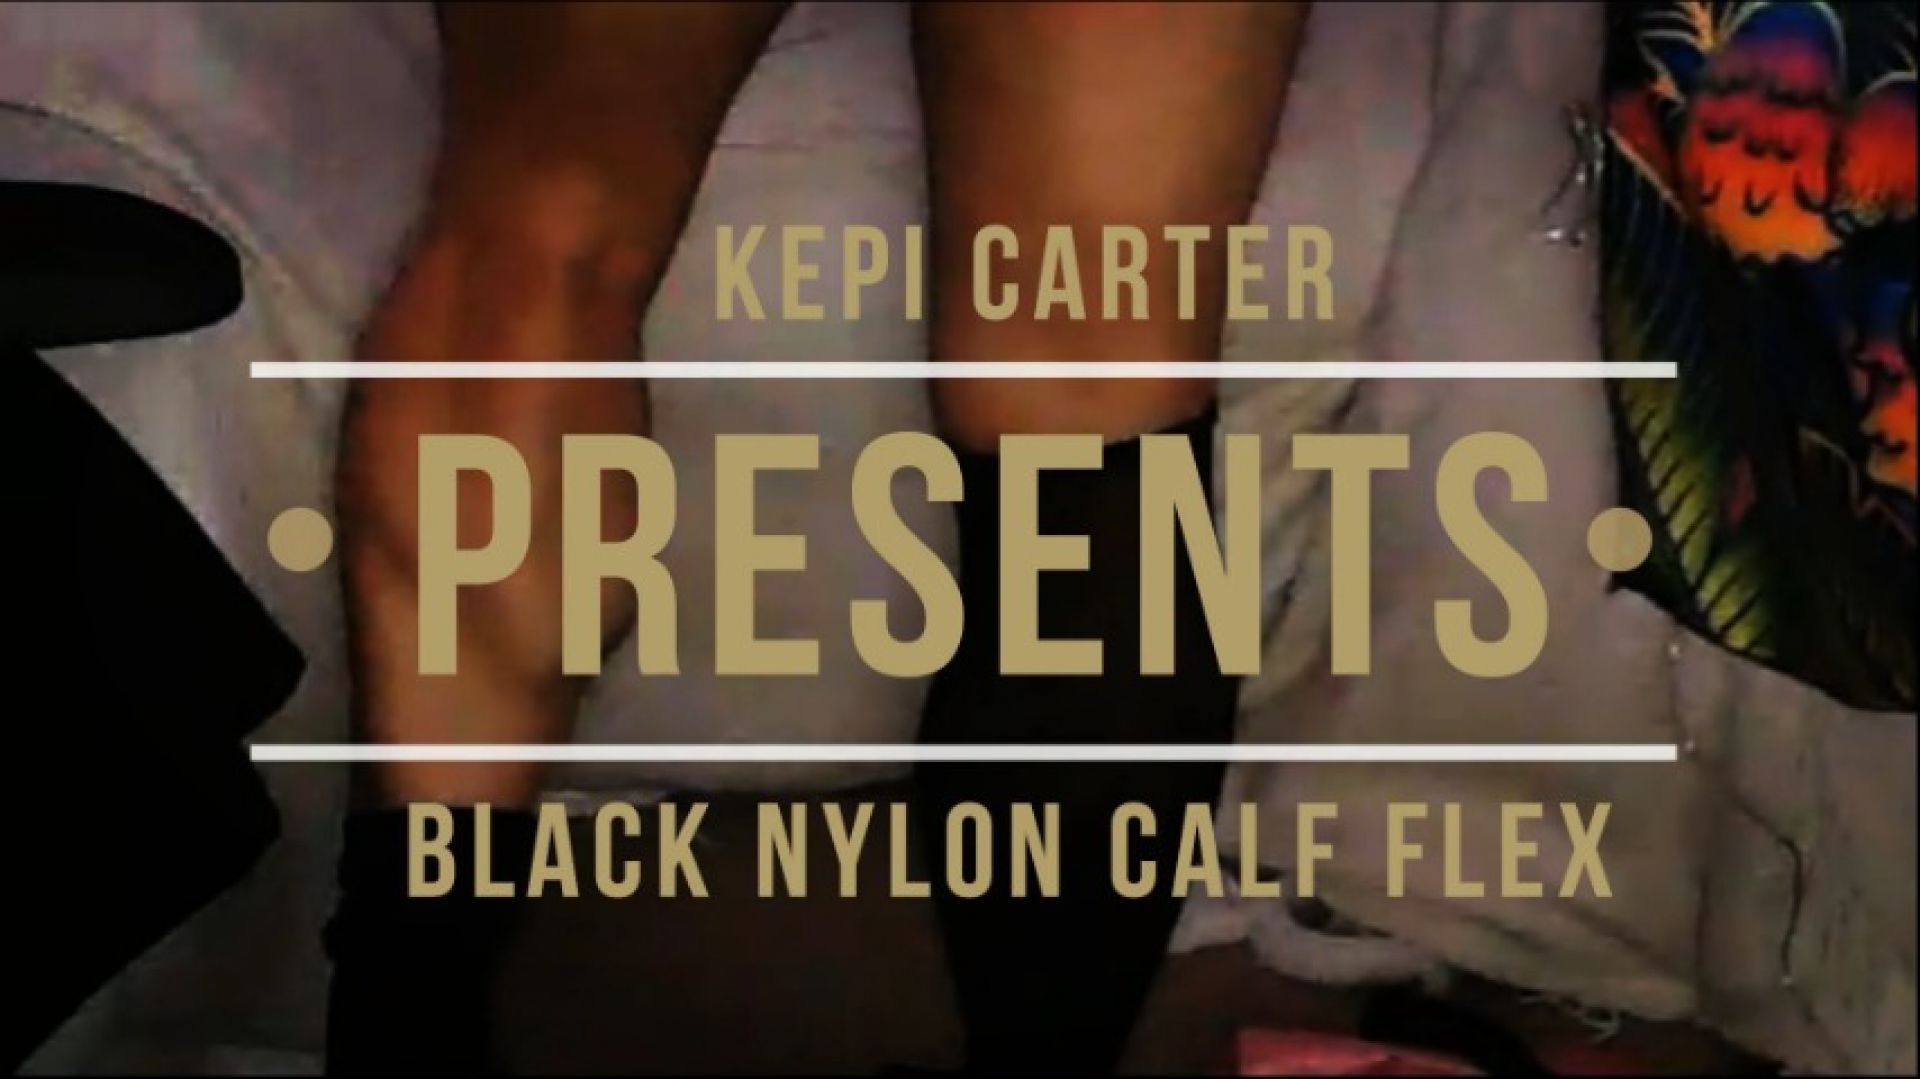 Black thigh-high nylon calf muscle flex